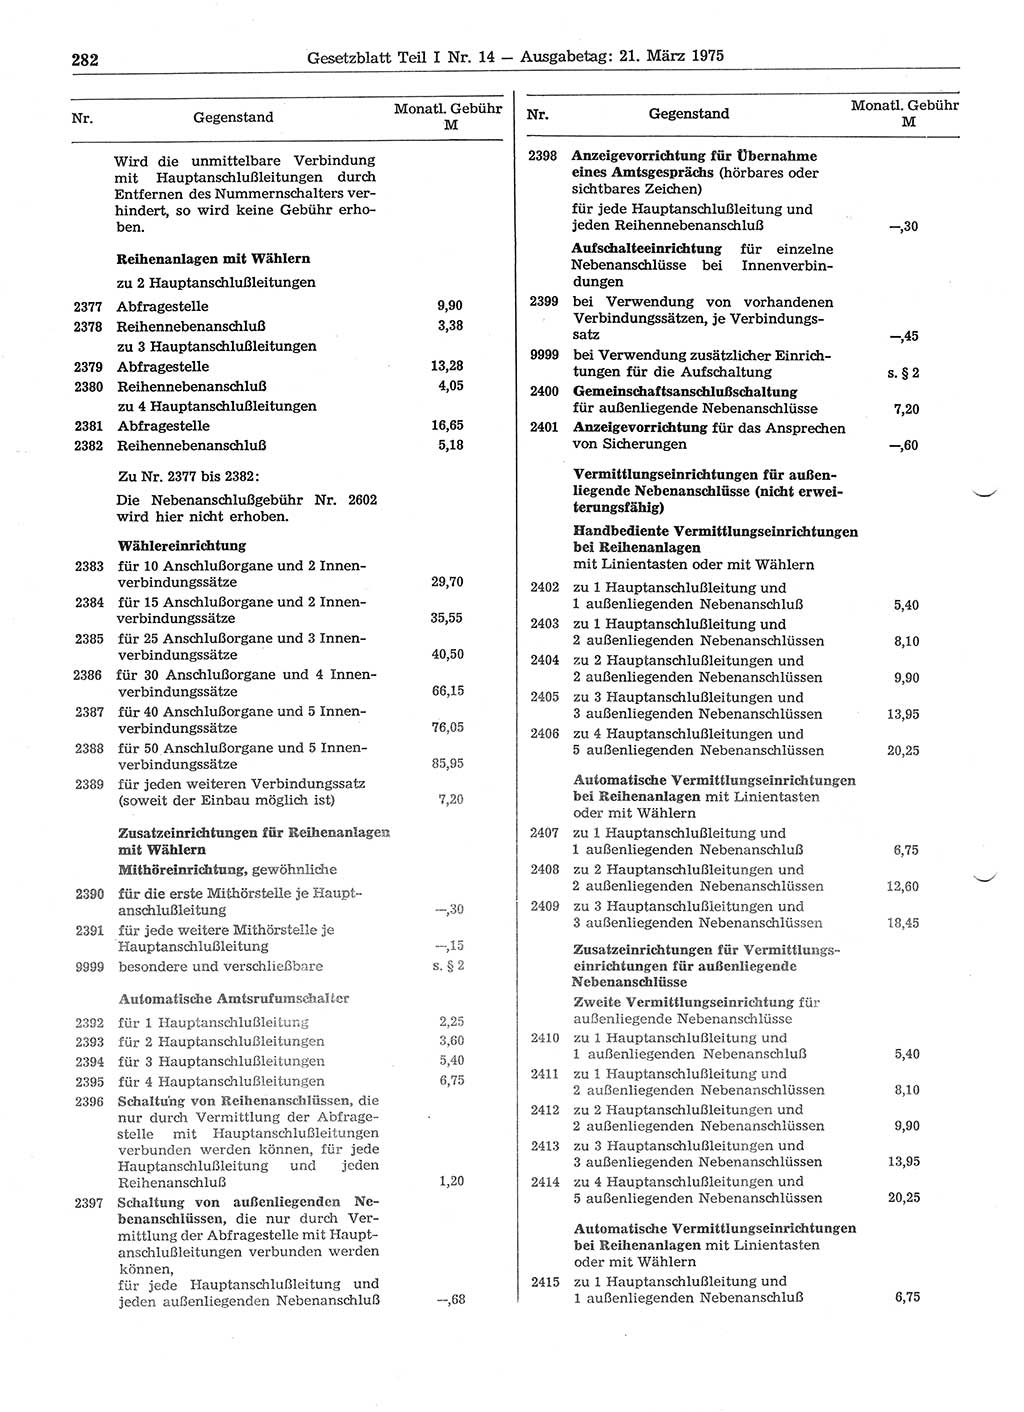 Gesetzblatt (GBl.) der Deutschen Demokratischen Republik (DDR) Teil Ⅰ 1975, Seite 282 (GBl. DDR Ⅰ 1975, S. 282)